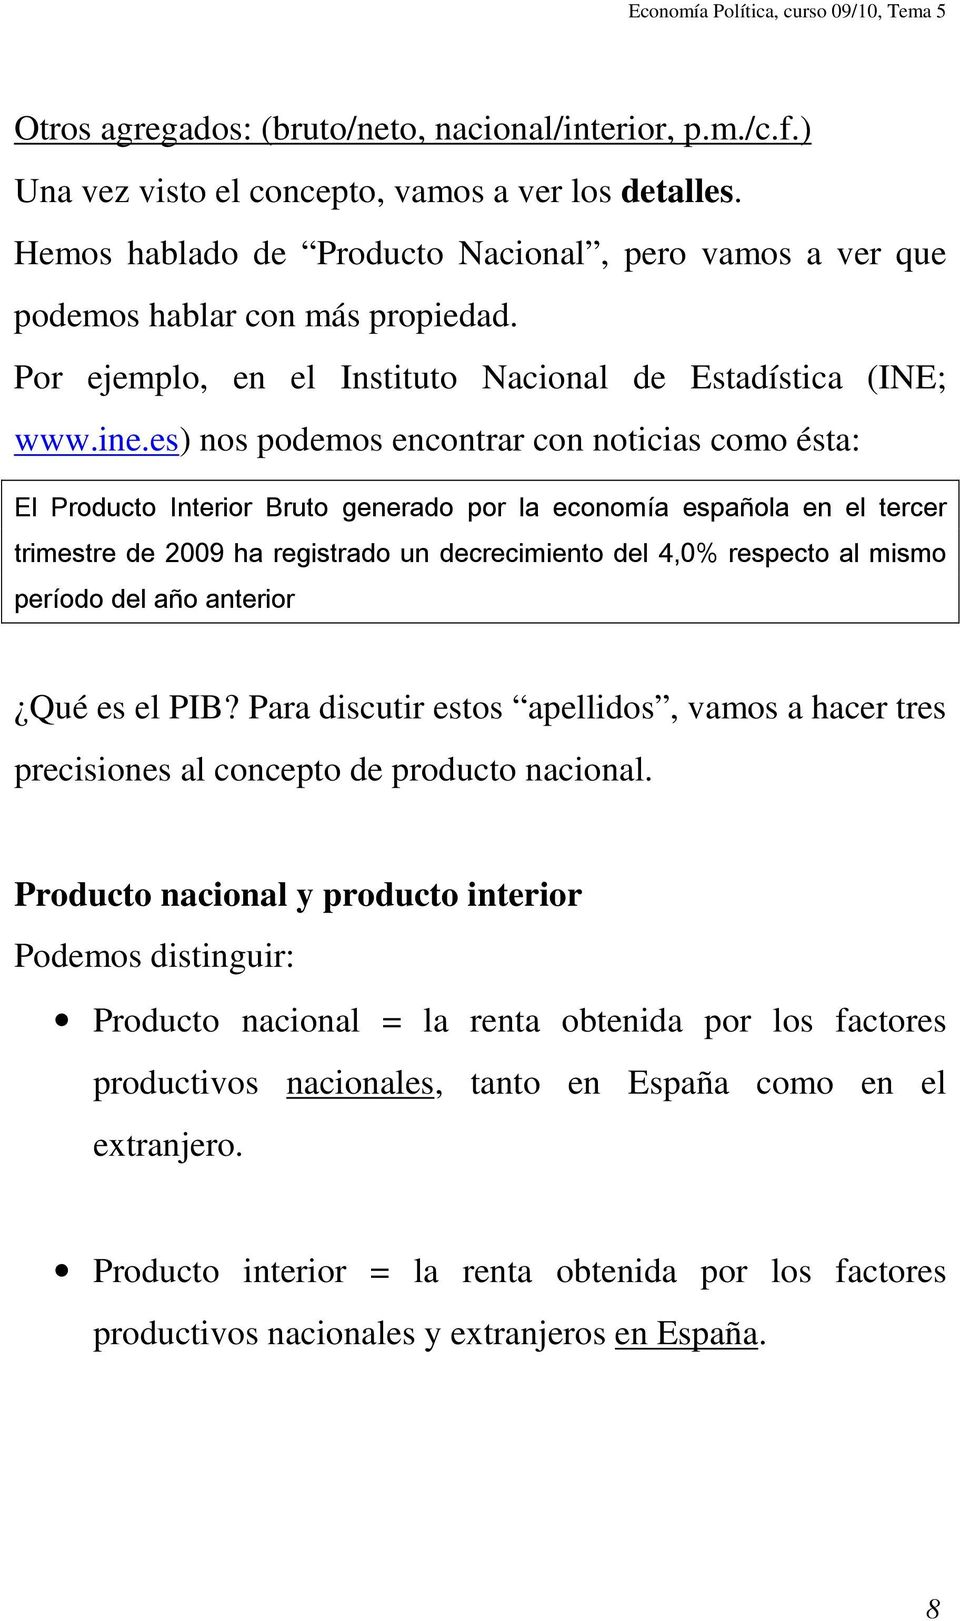 es) nos podemos encontrar con noticias como ésta: El Producto Interior Bruto generado por la economía española en el tercer trimestre de 2009 ha registrado un decrecimiento del 4,0% respecto al mismo